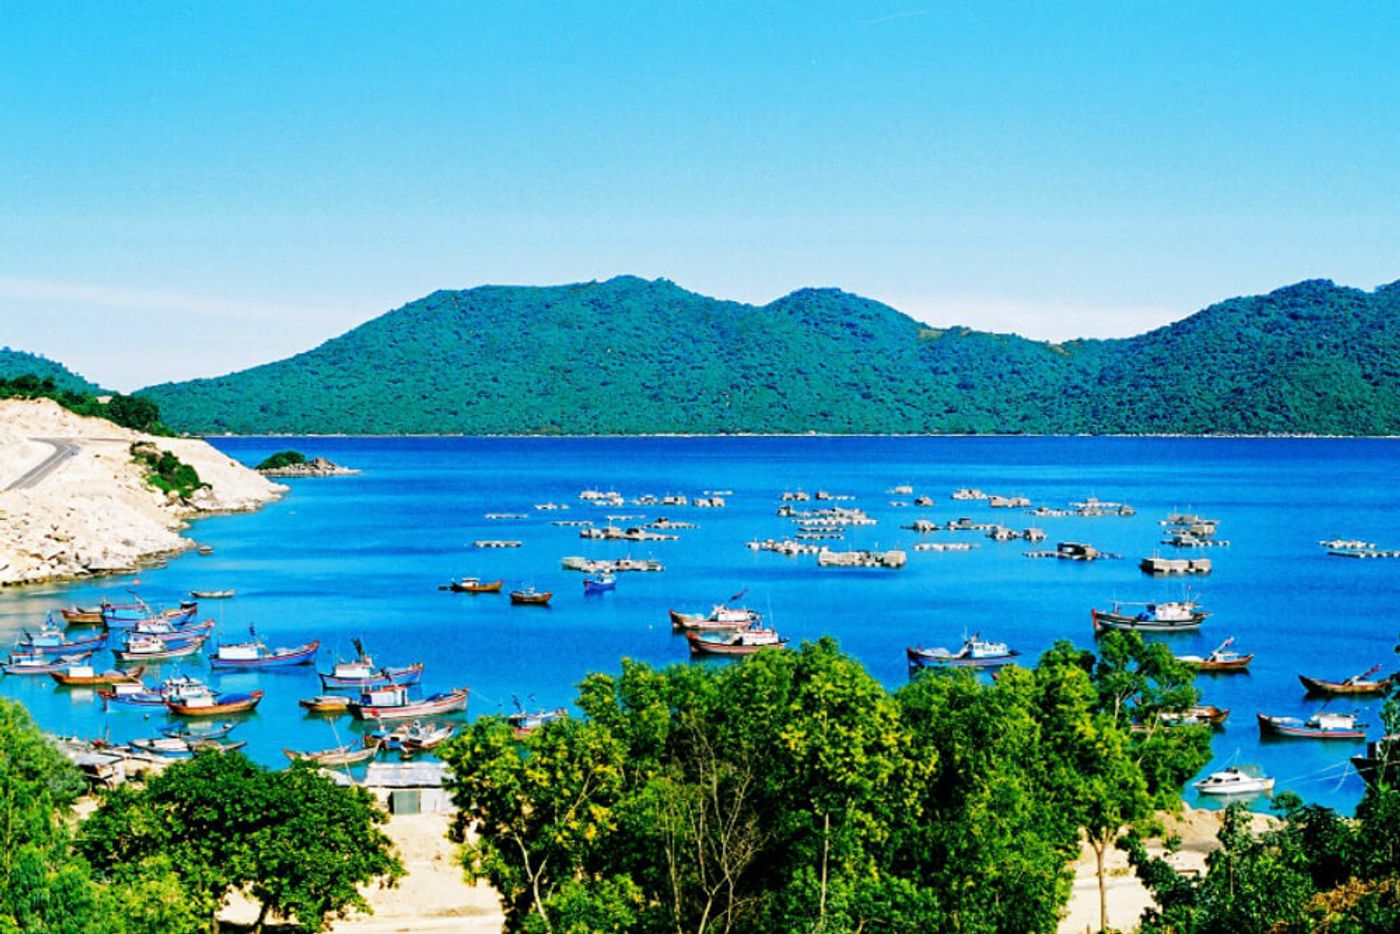 Vung Ro Bay, Phu Yen